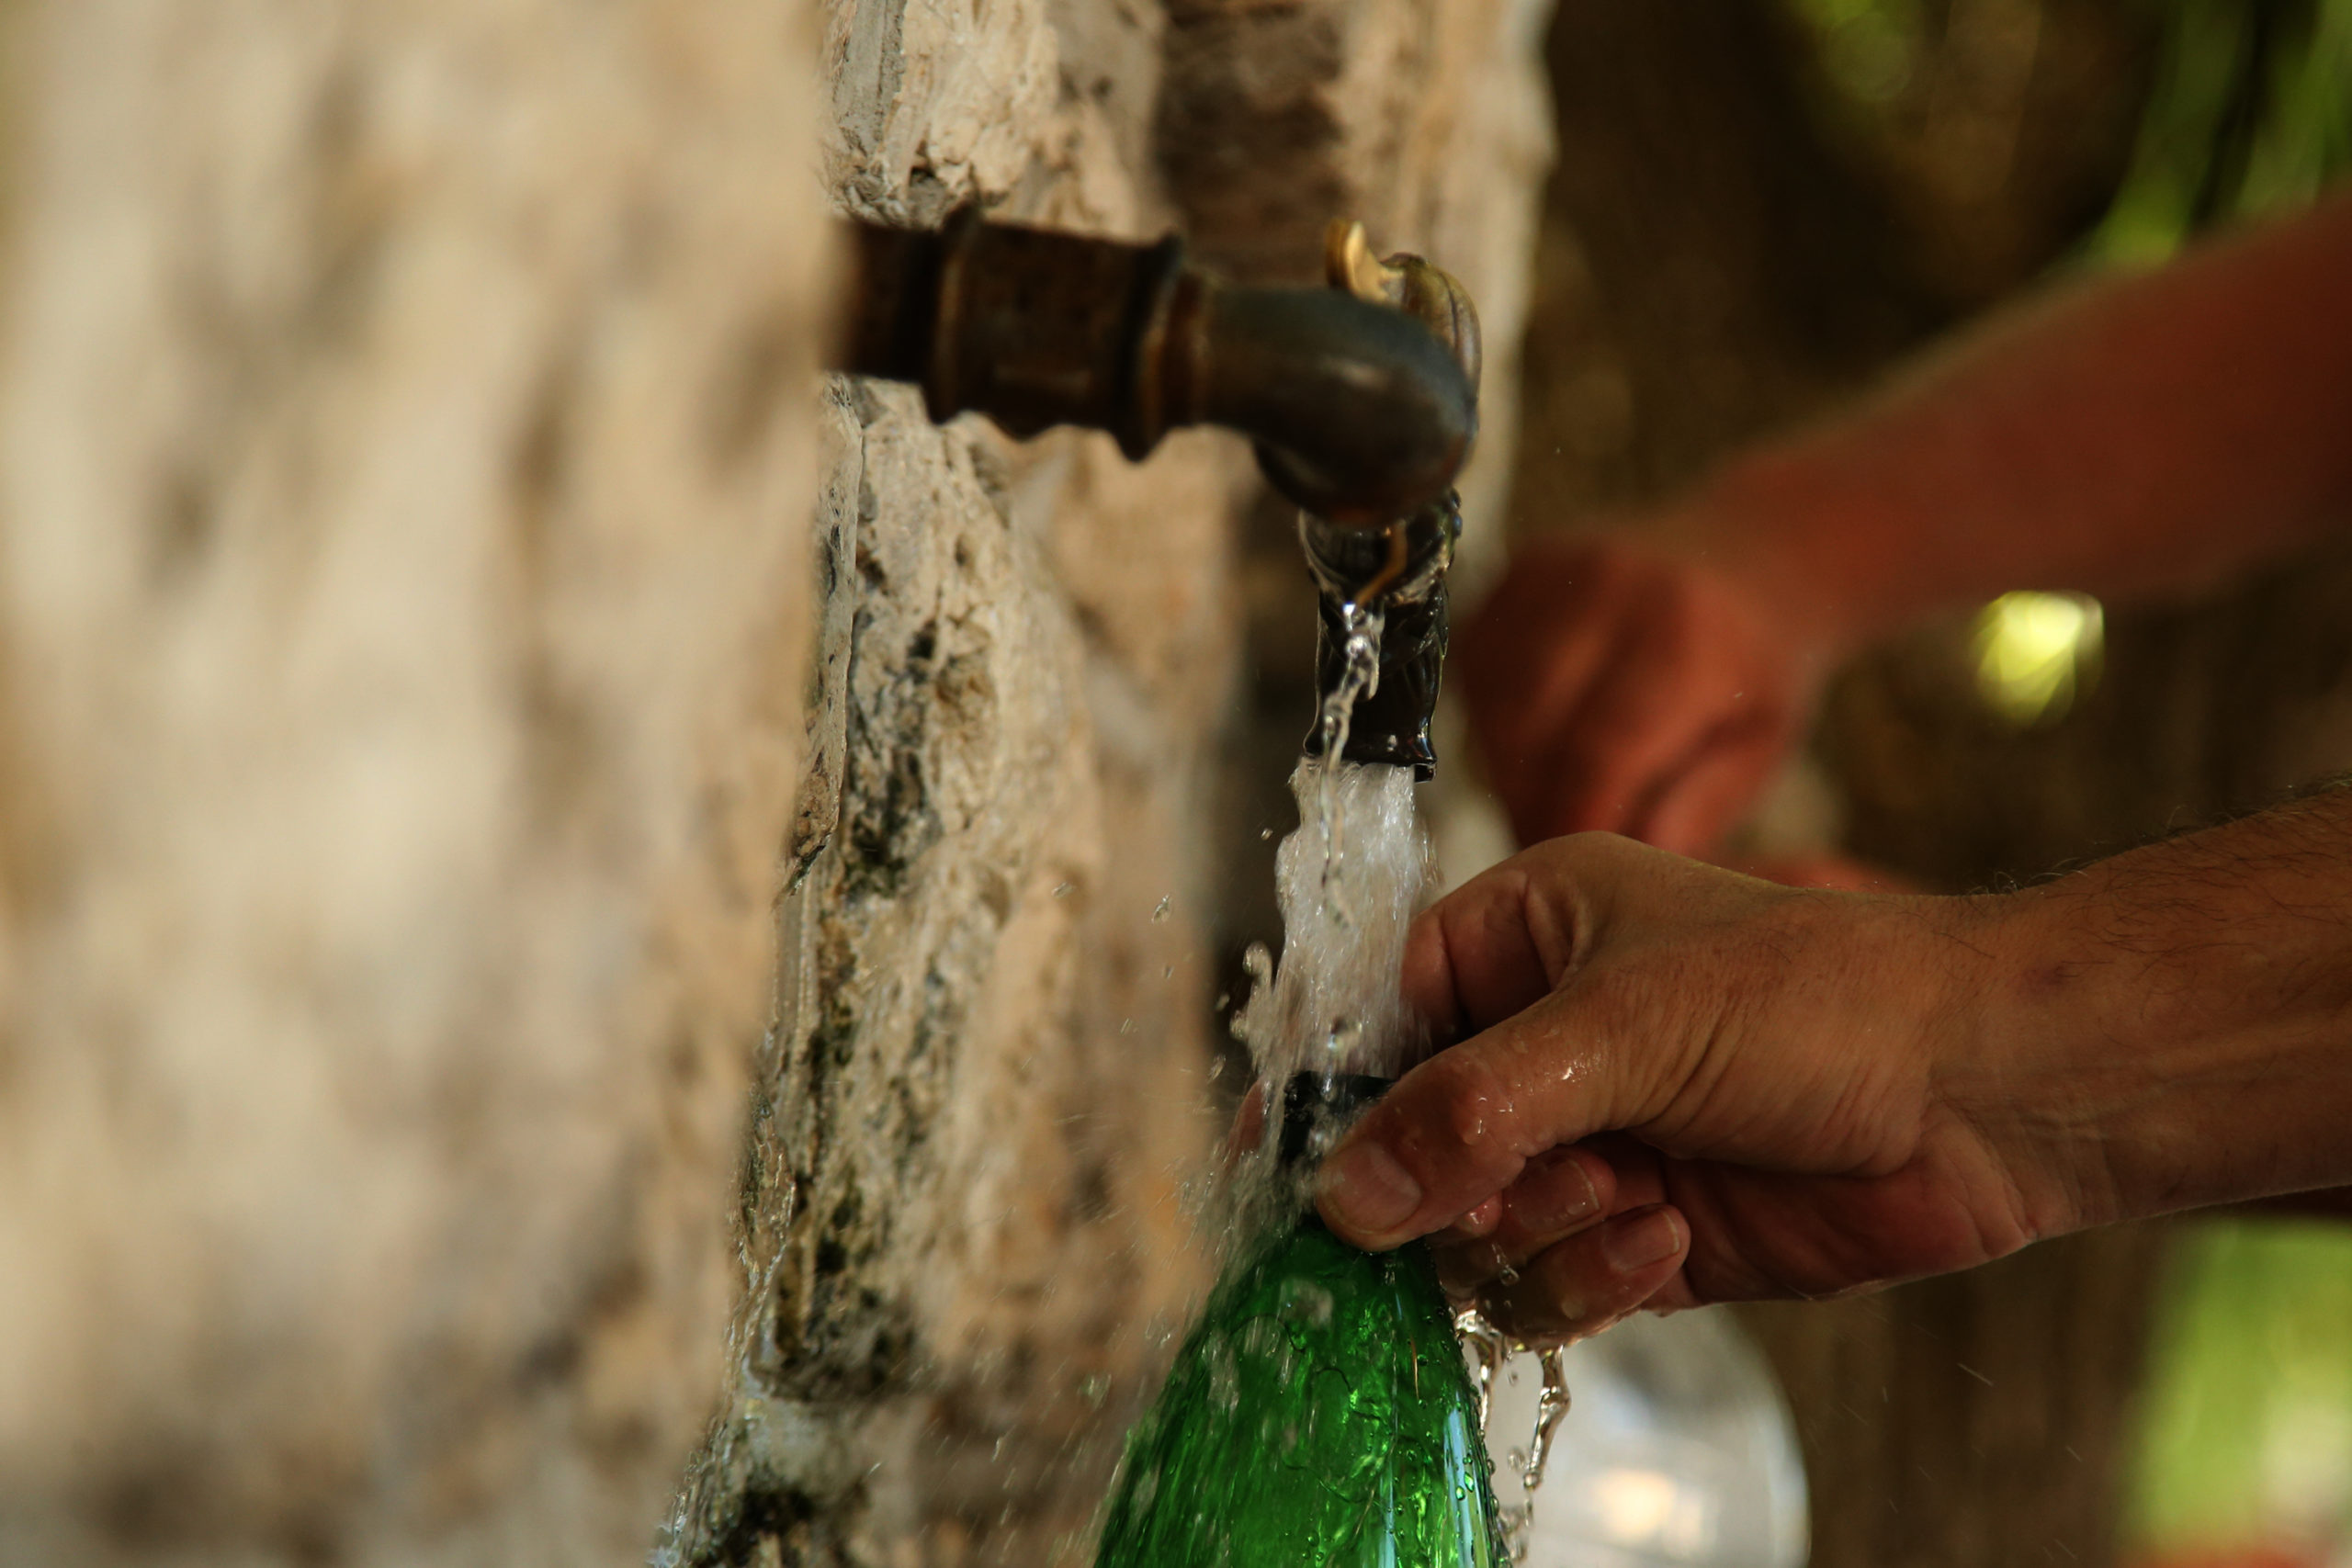 Hladna izvorska voda usred grada: Evo u čemu je tajna čarobnog vrela Bistrice, na kom su se mladići kupali kao vile (FOTO)